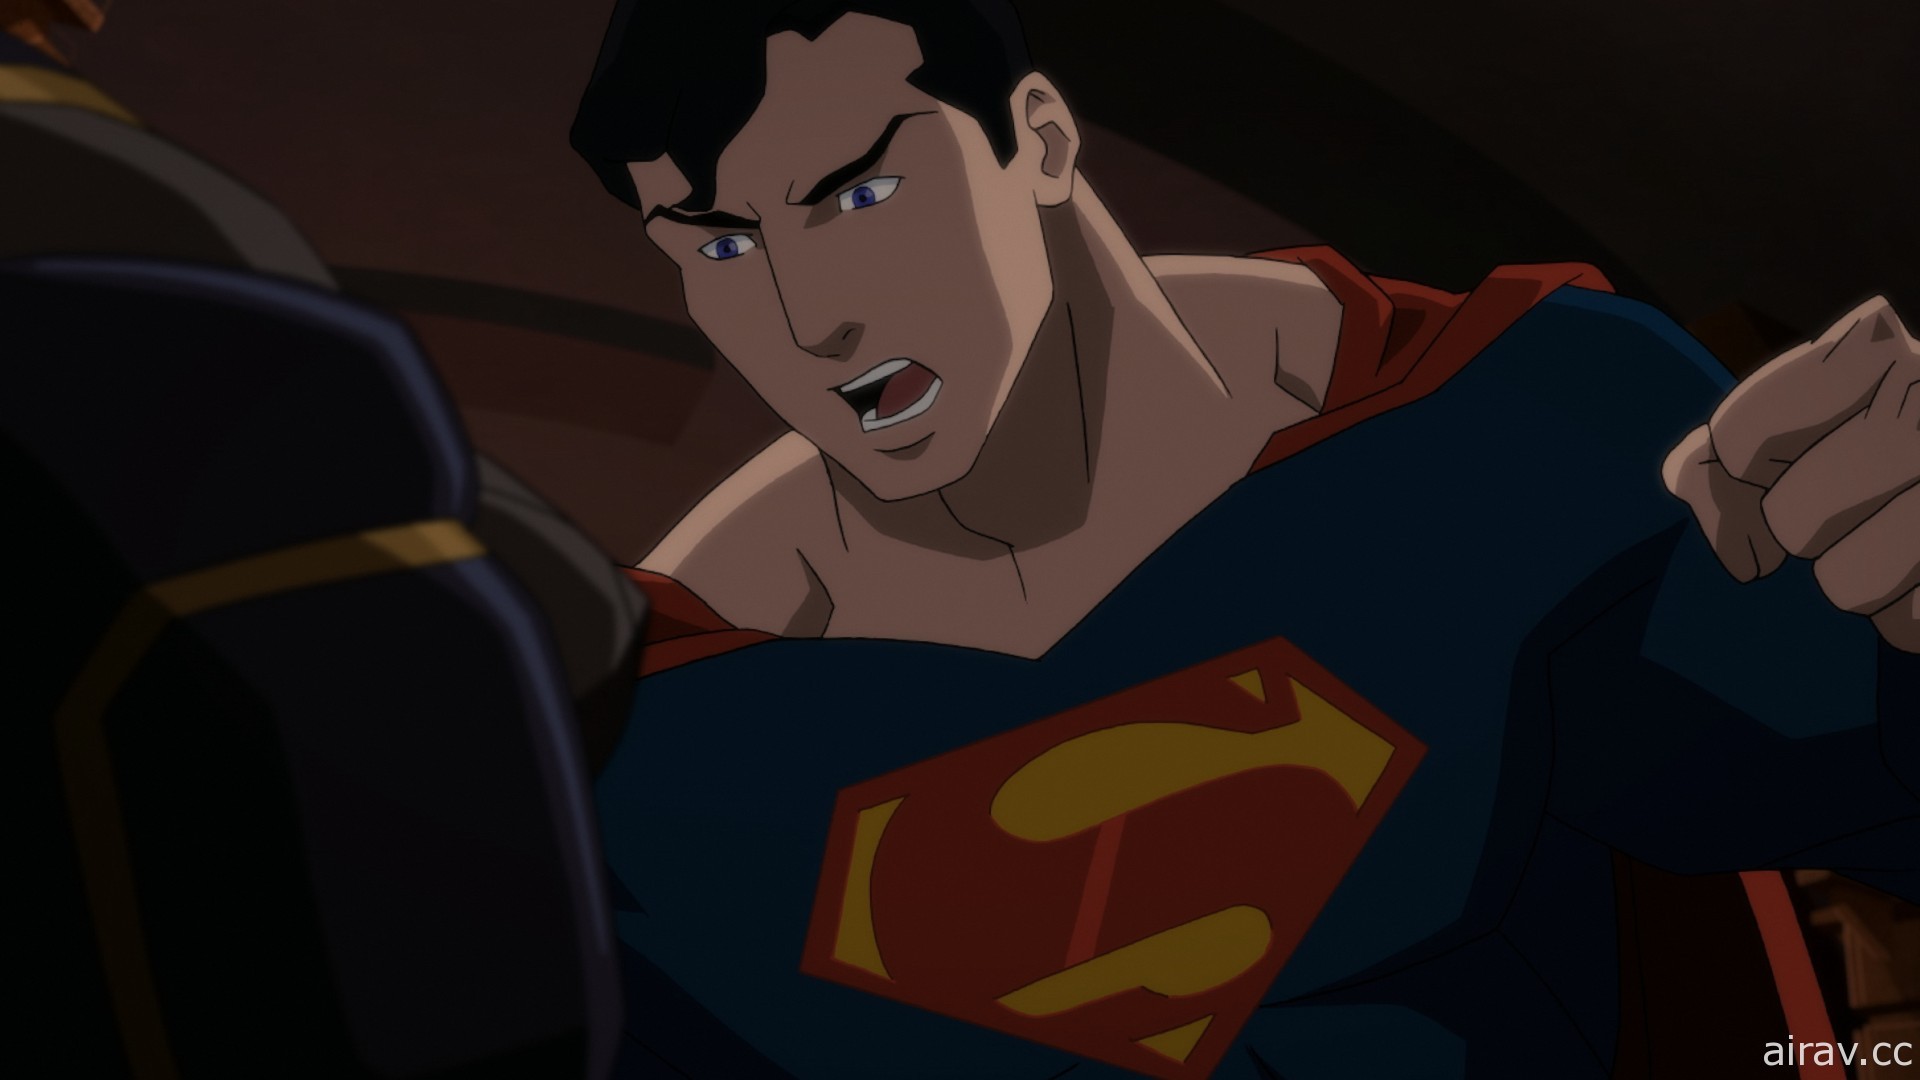 正義聯盟集合 HBO GO 上架多部 DC 動畫宇宙作品